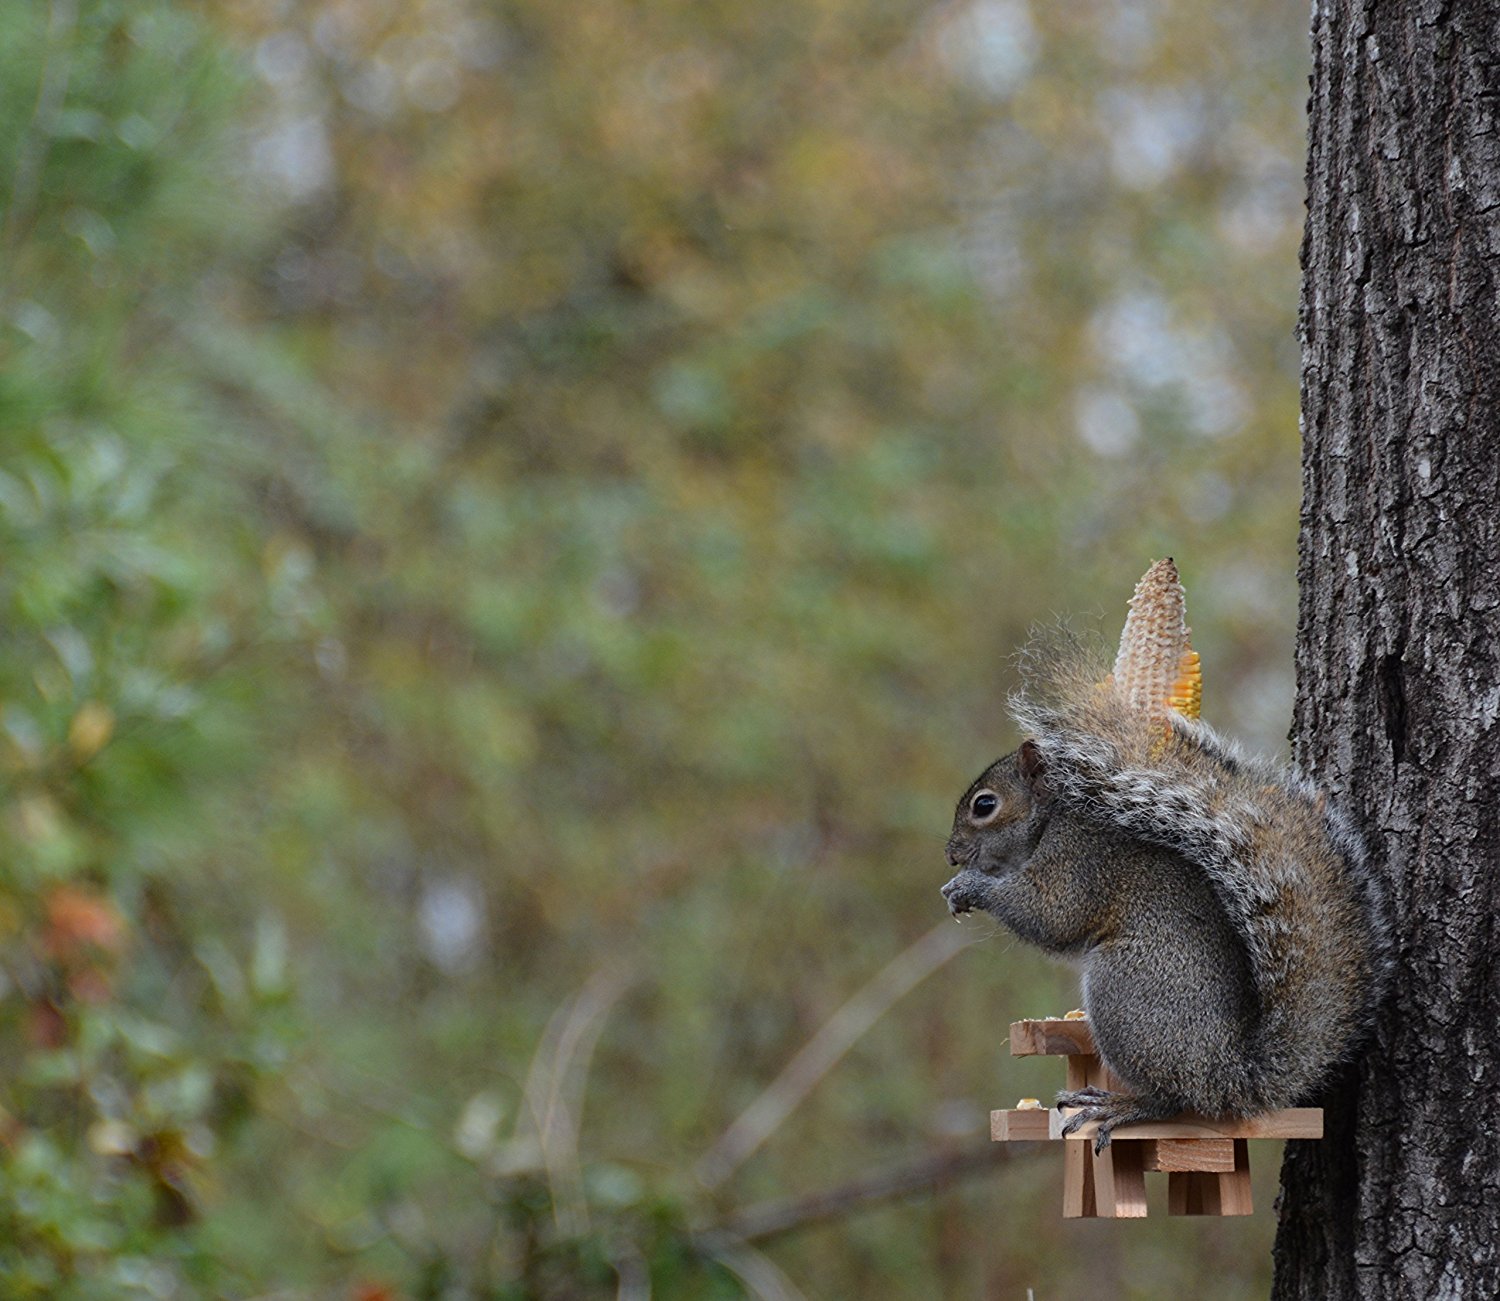 Amazon.com : Picnic Table Squirrel Feeder : Garden & Outdoor